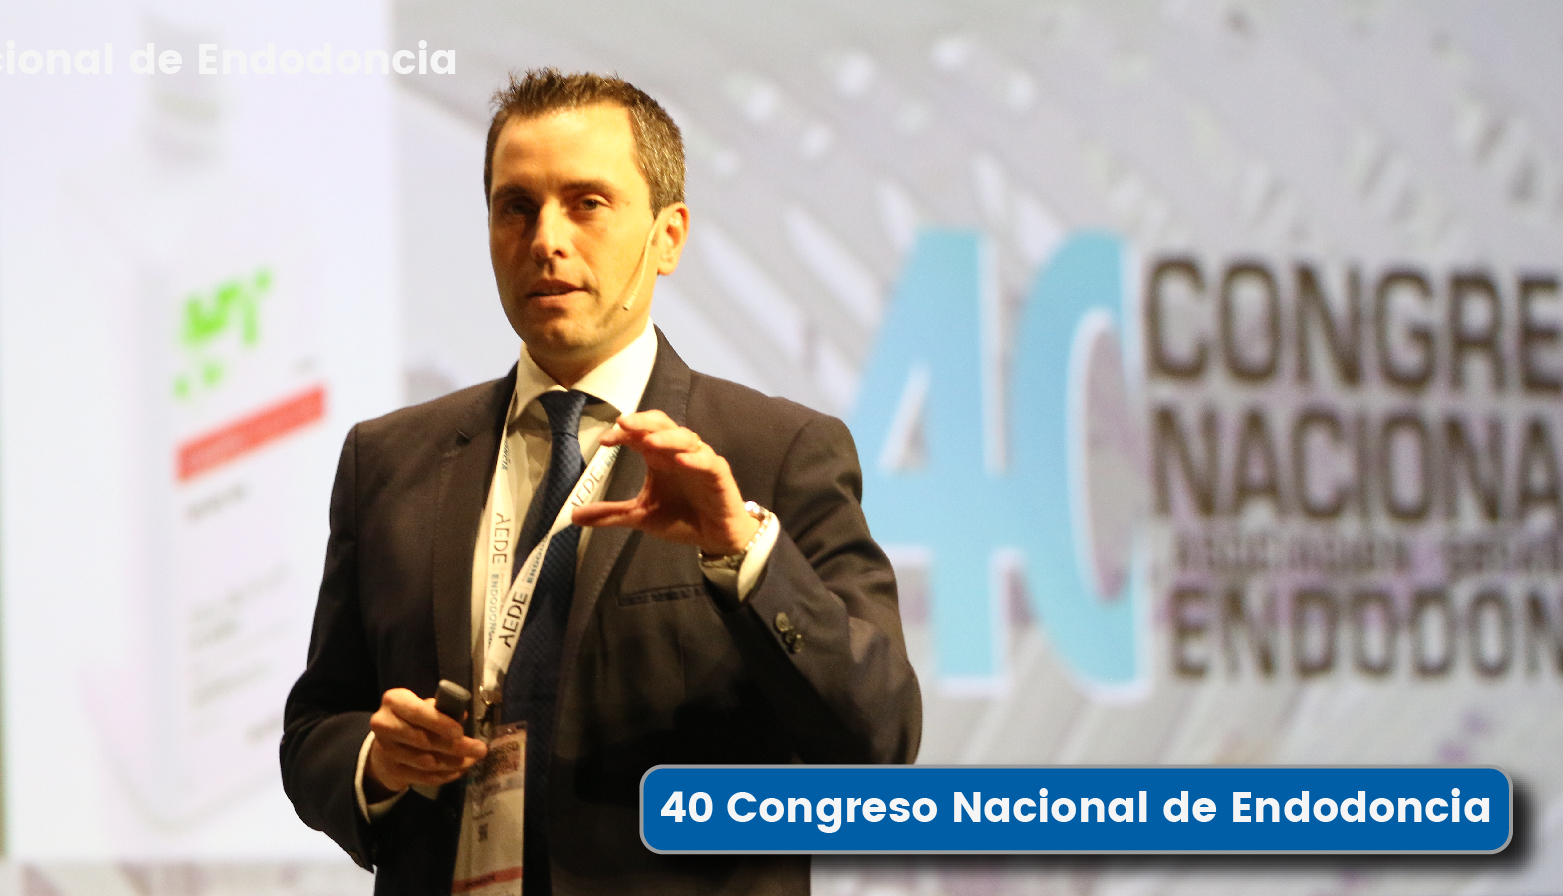 40 Congreso Nacional de Endodoncia 2